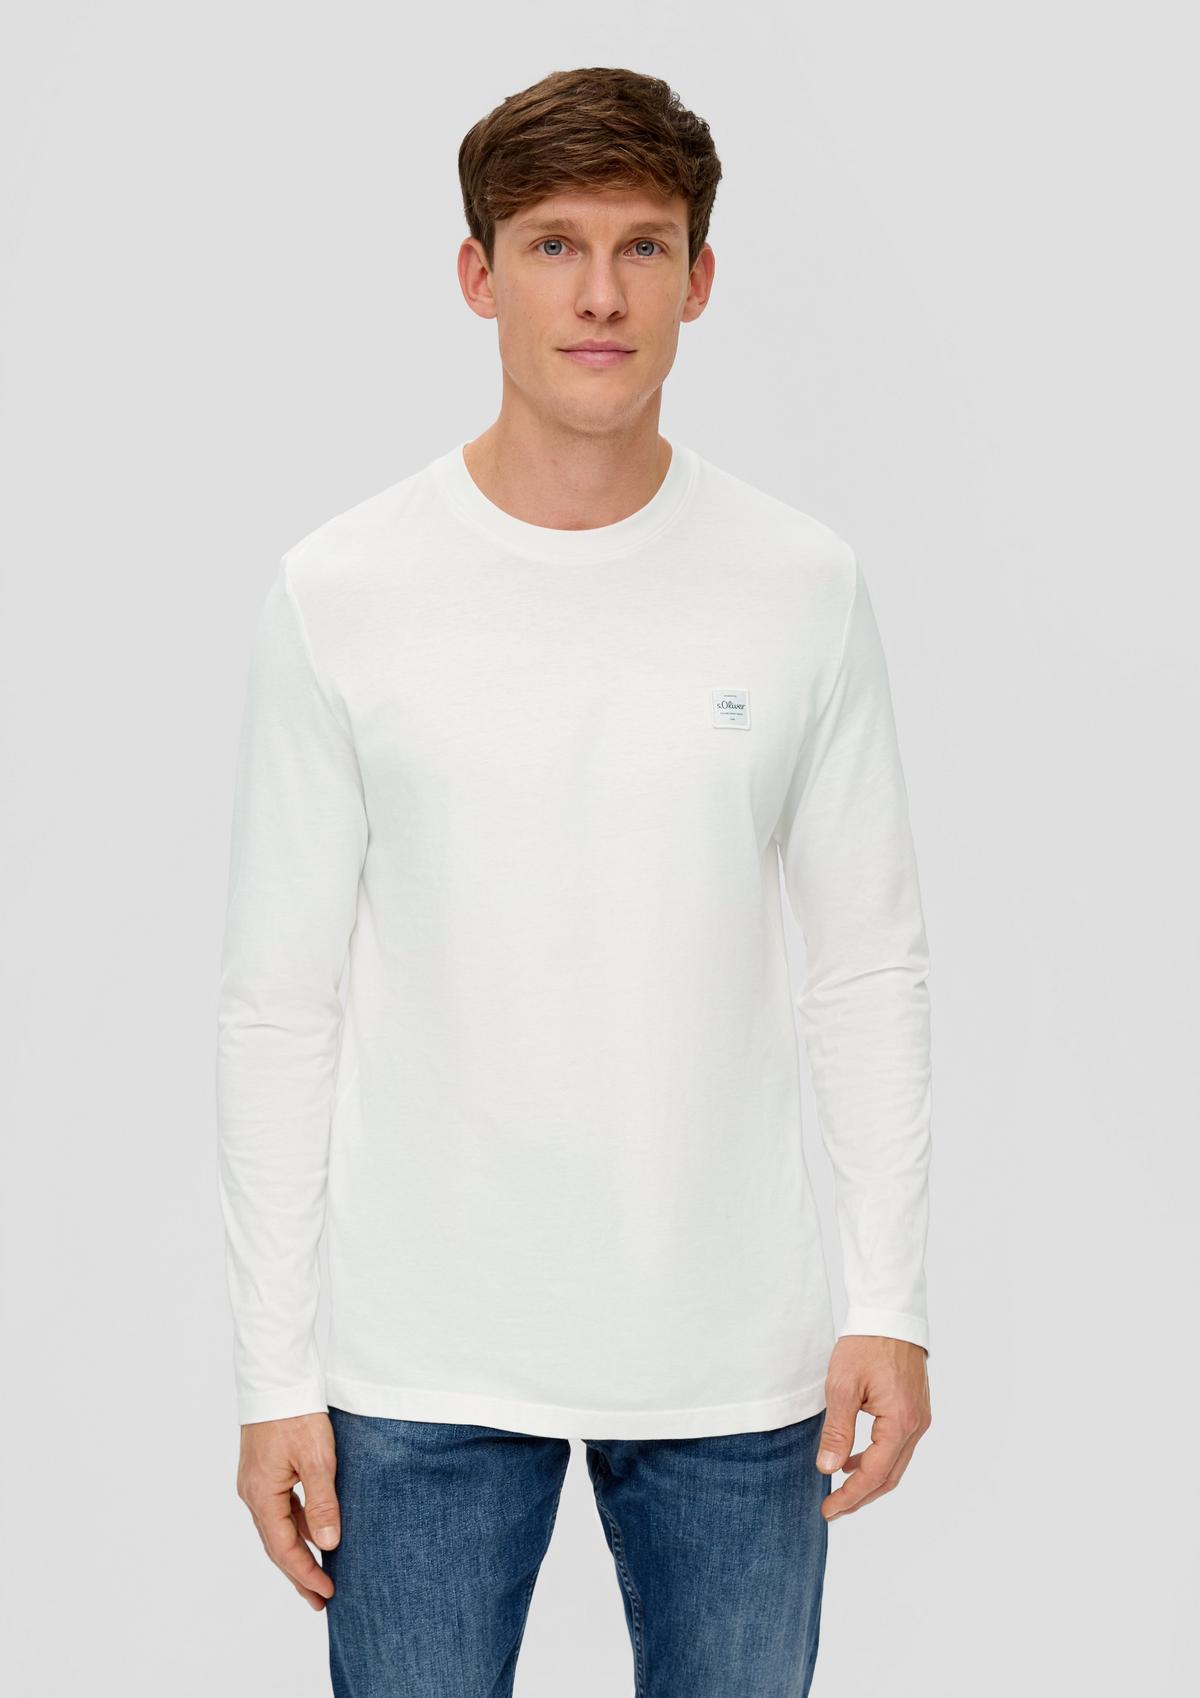 Tričko s dlouhým rukávem z čisté bavlny